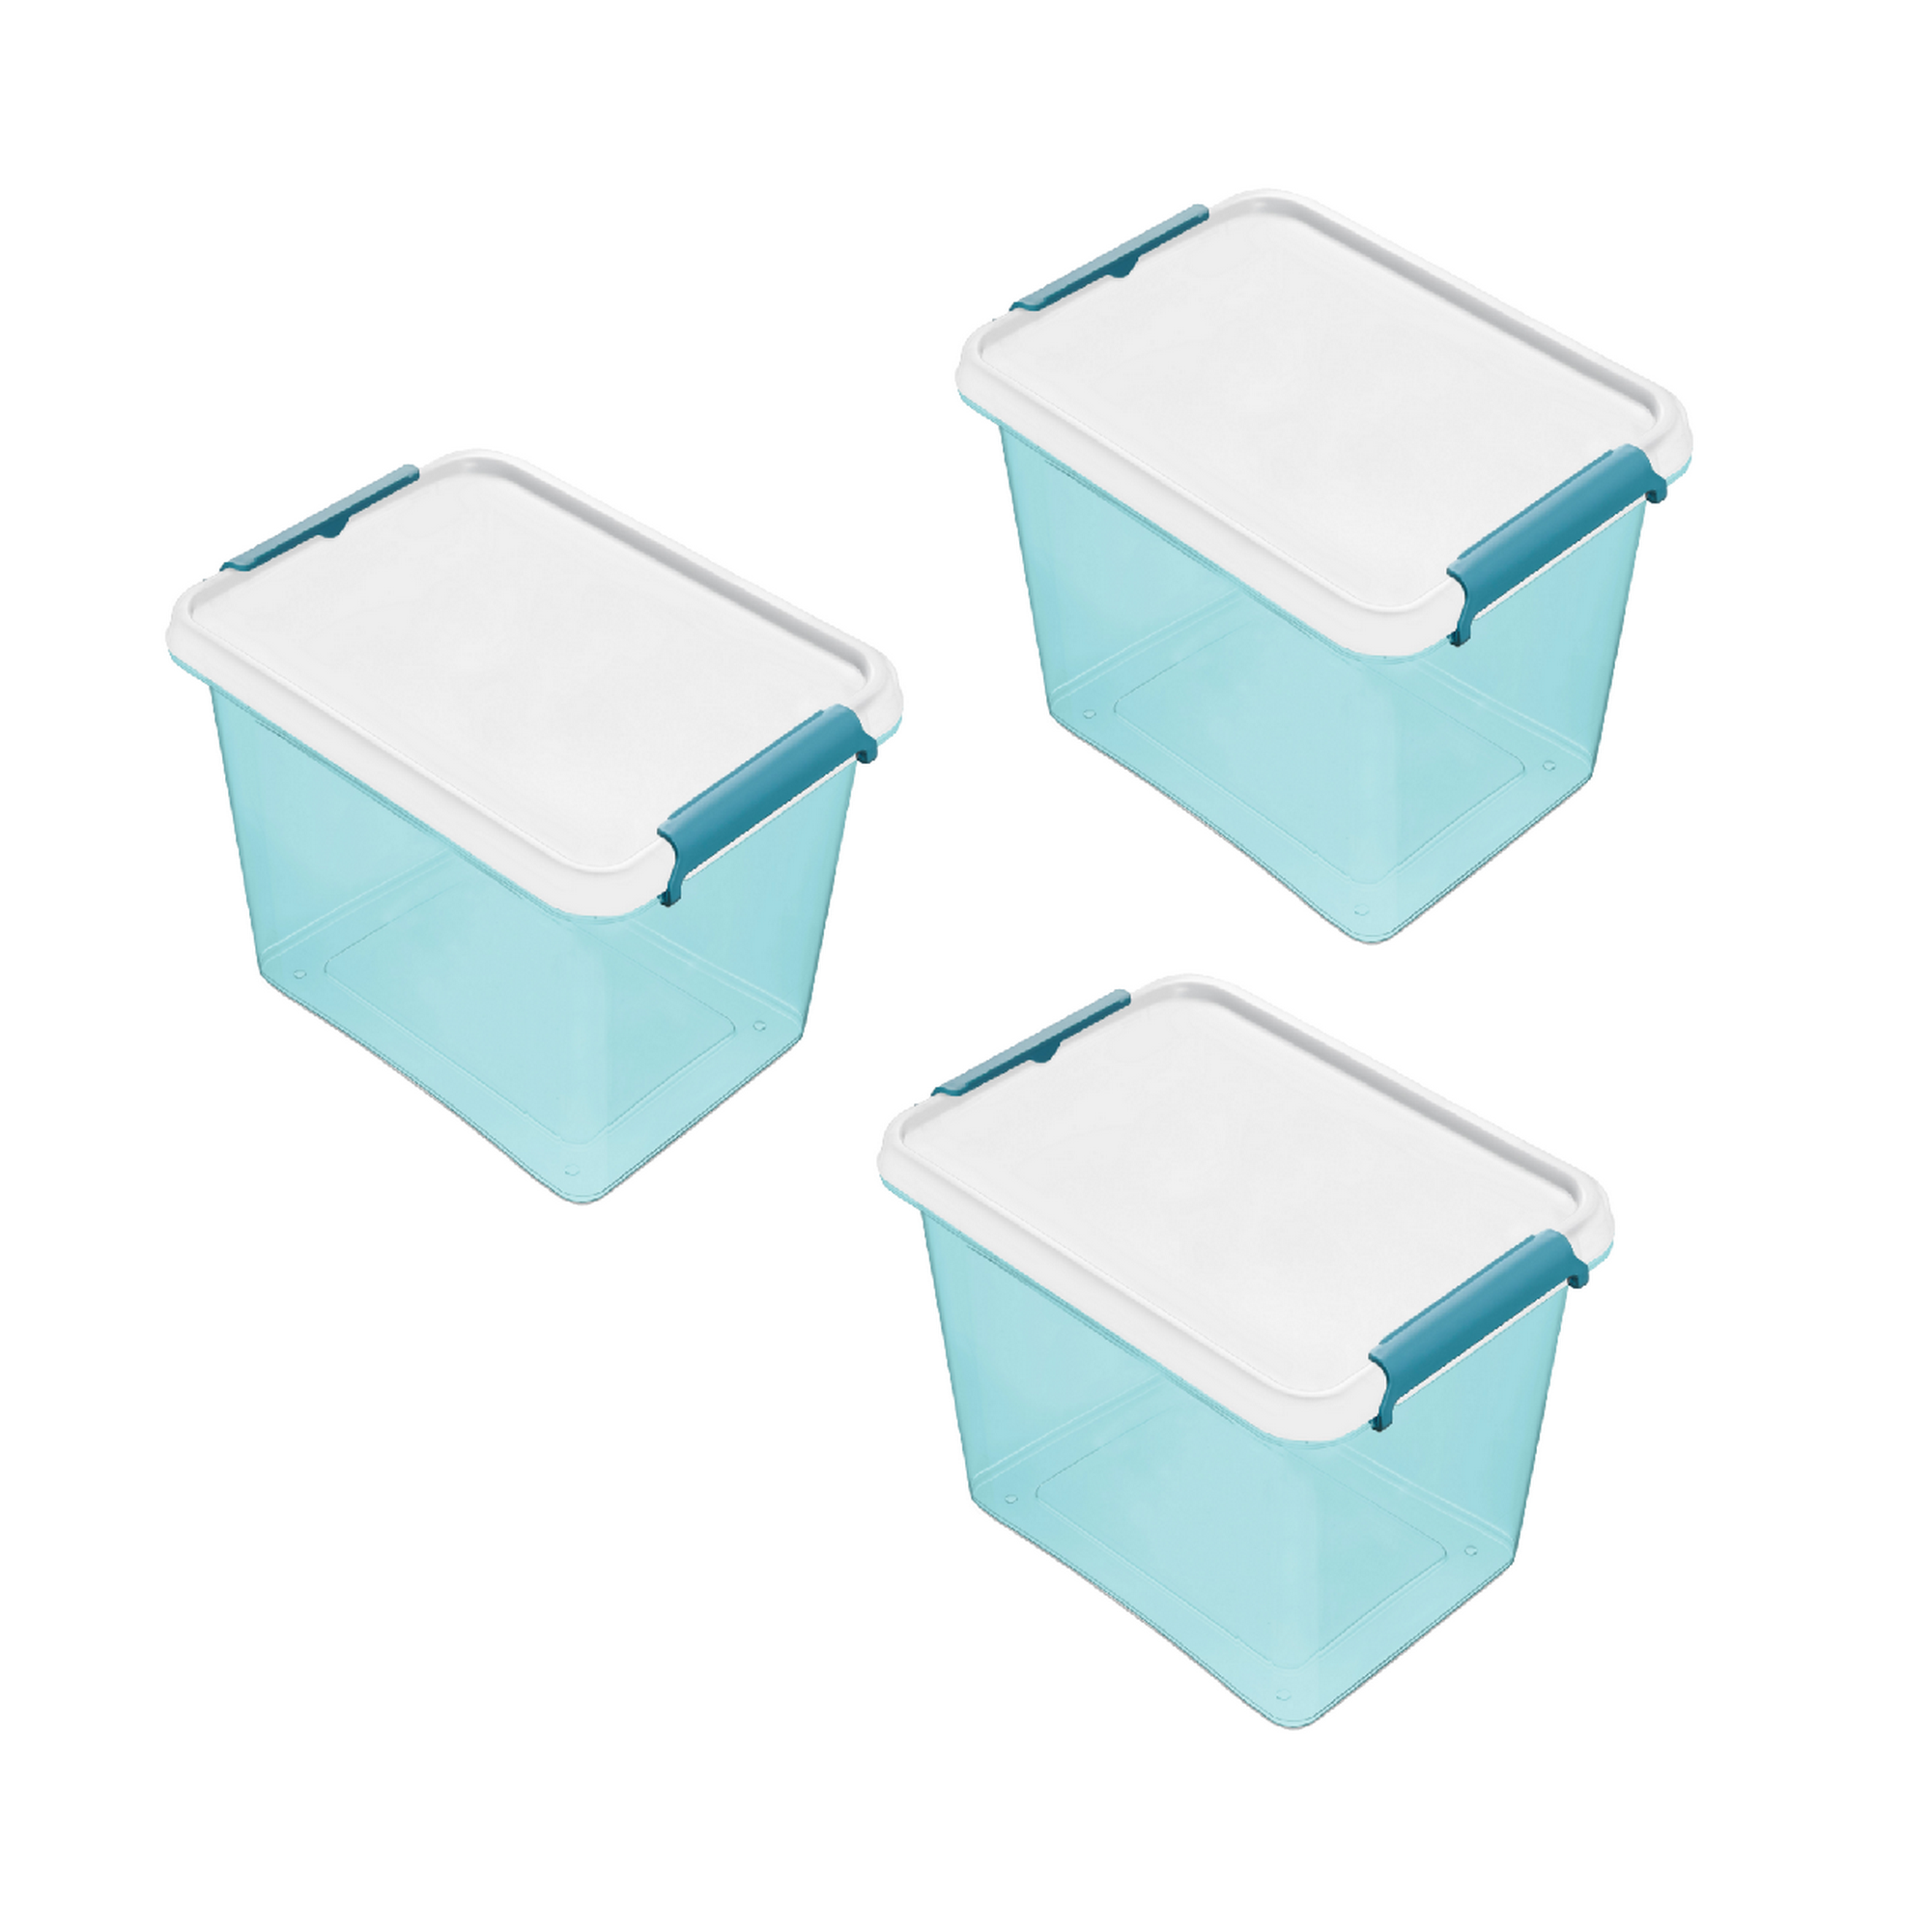 Aufbewahrungsbox-Set blau-transparent 39 x 29 x 21,5 cm 15,5 l, 3-teilig + product picture